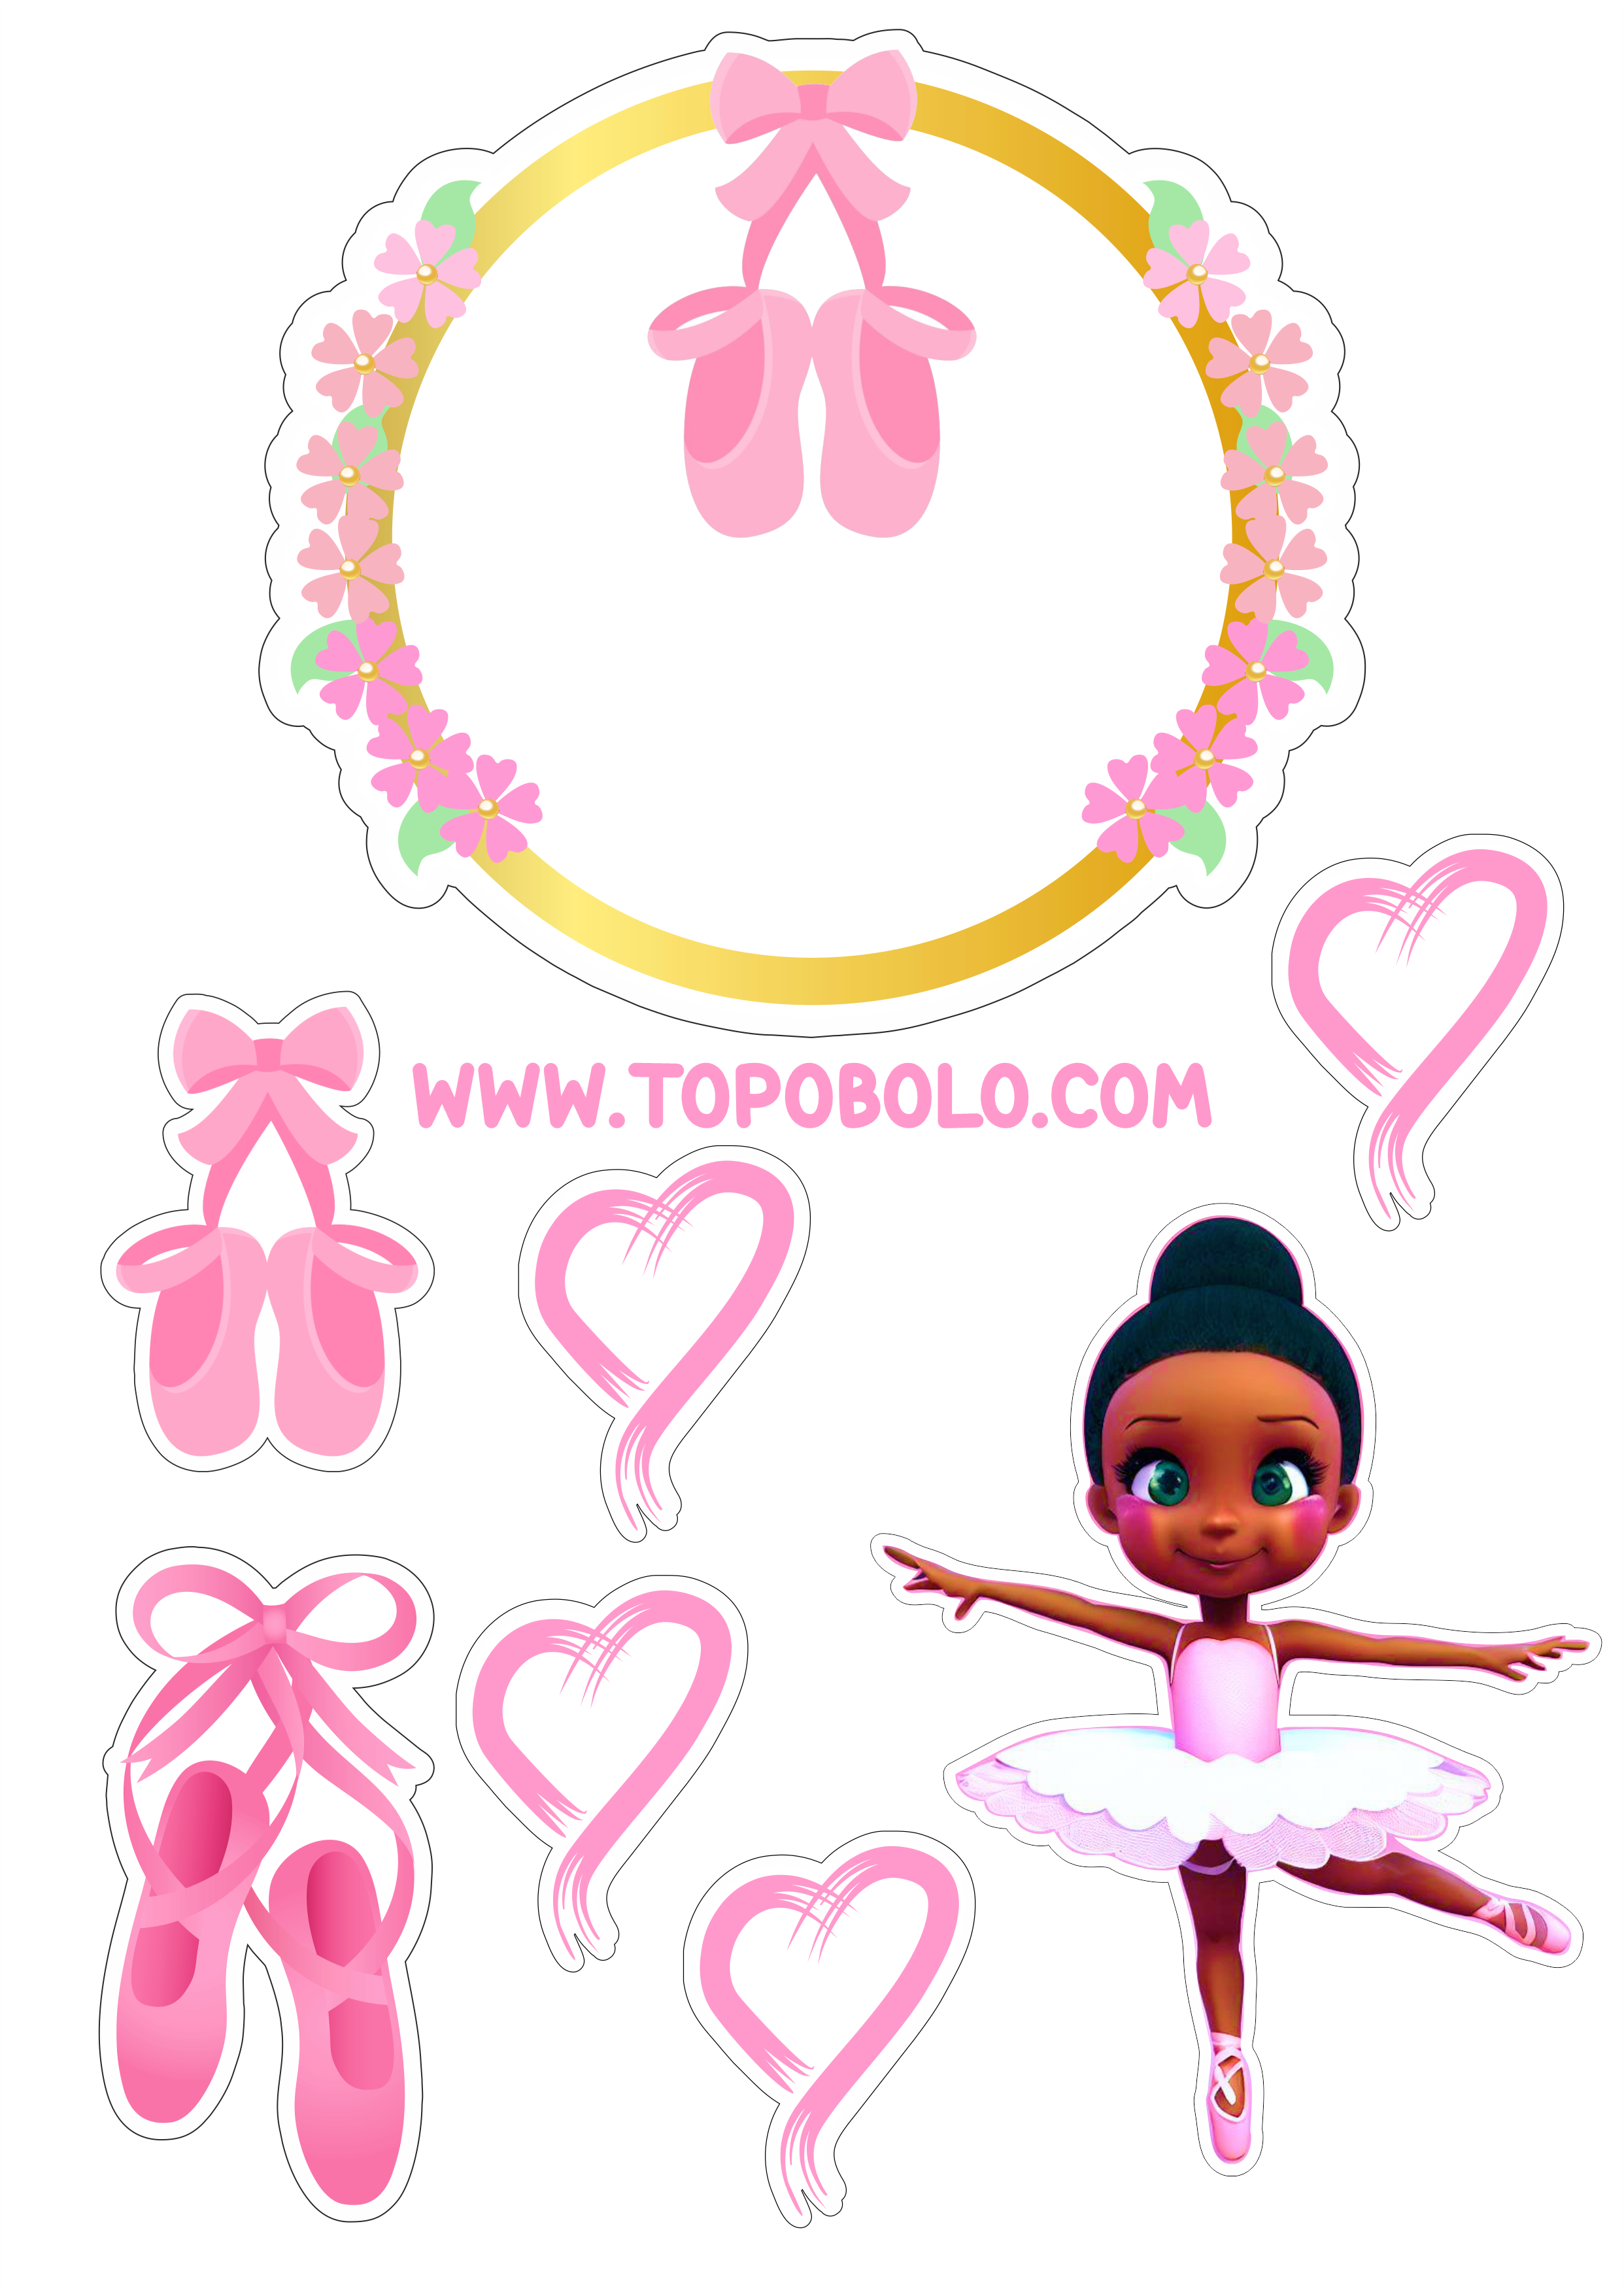 Bailarina topo de bolo aniversário menina rosa com corações boneca fofinha bolo personalizado png image